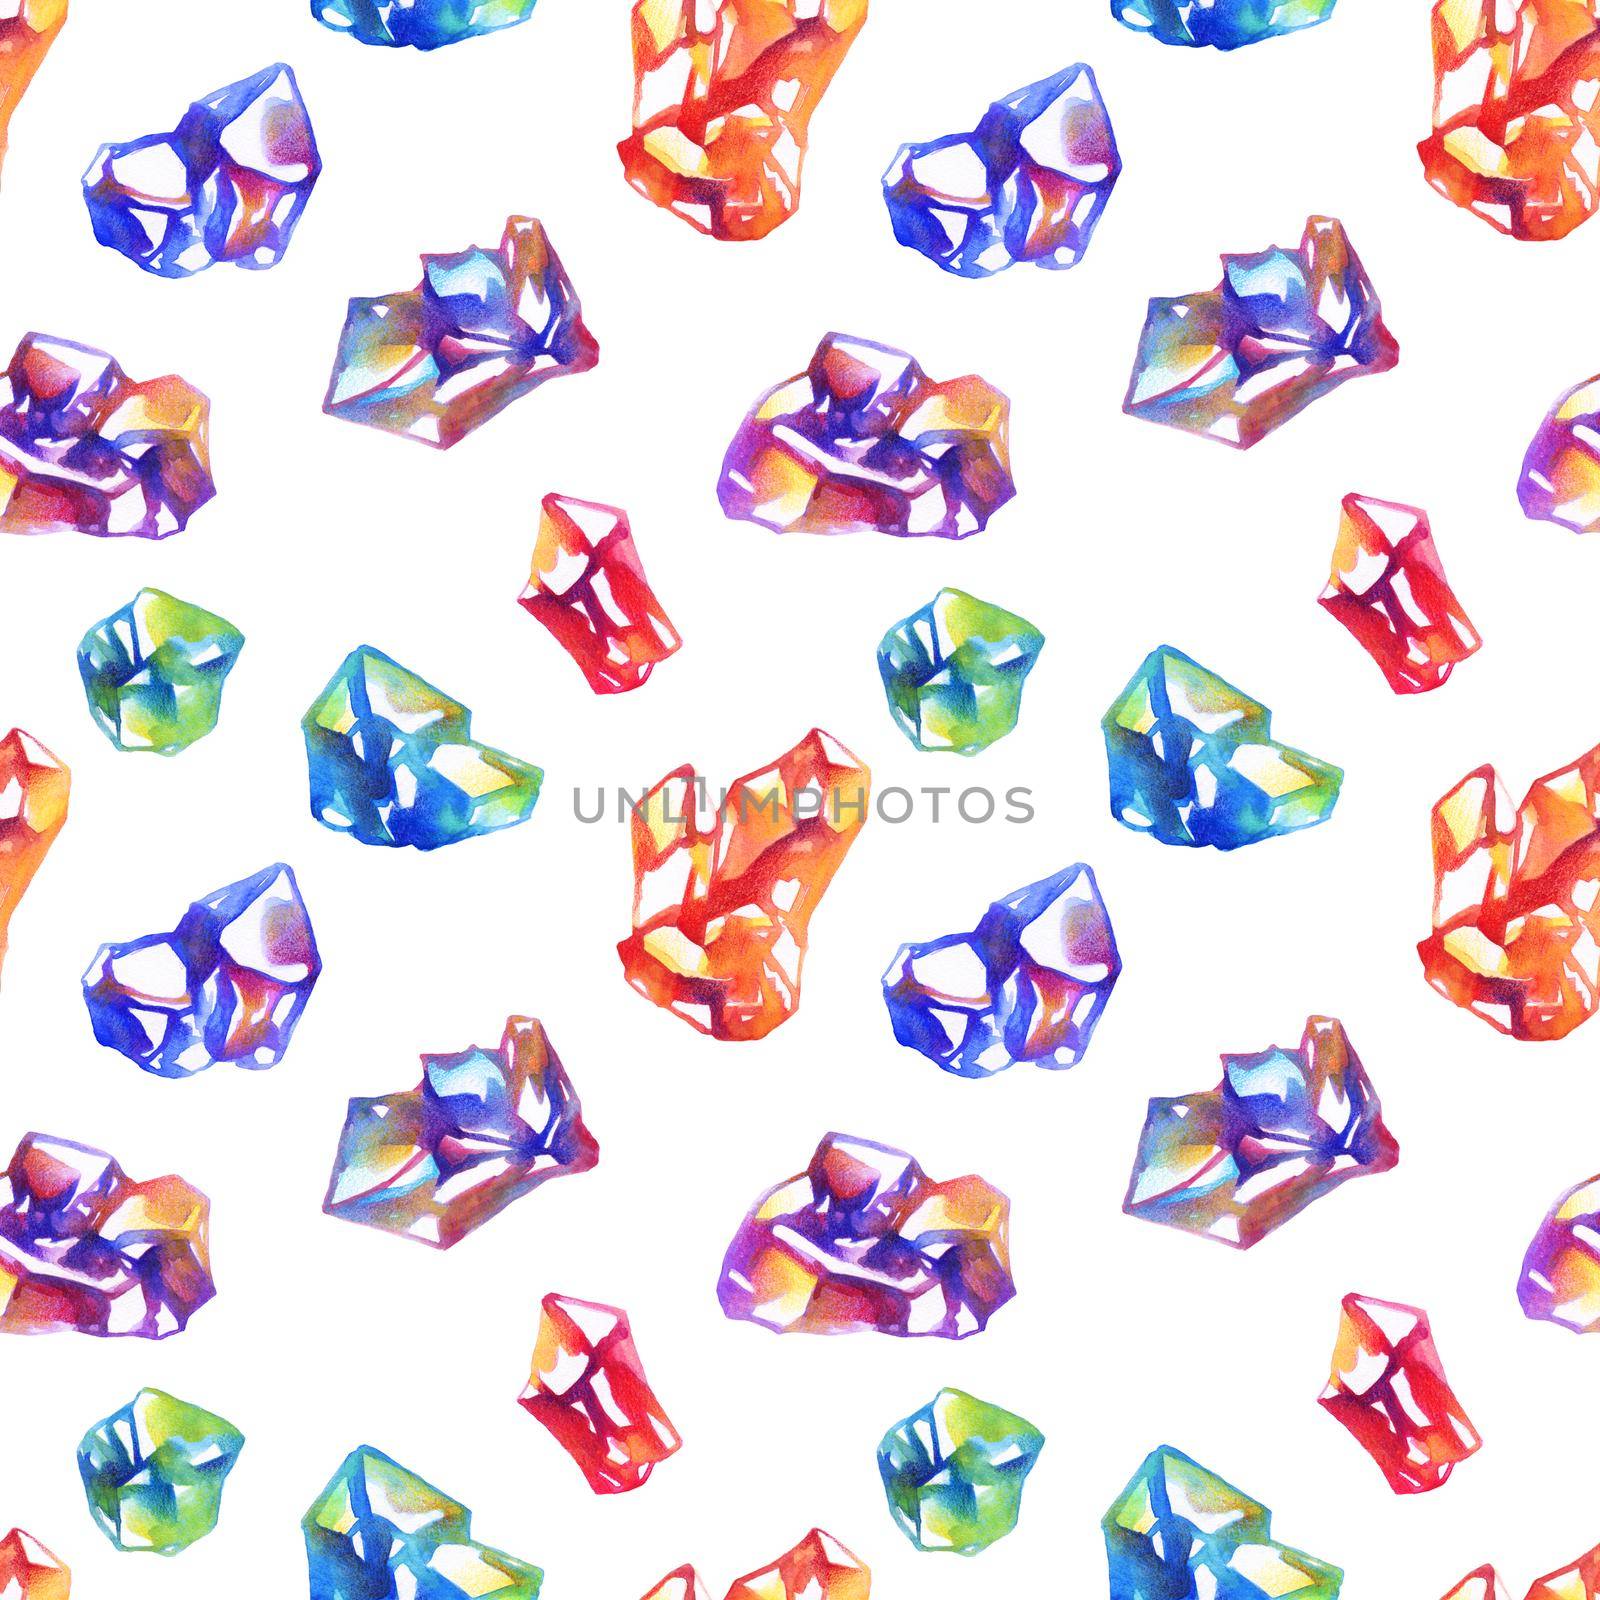 Watercolor crystals pattern by Olatarakanova